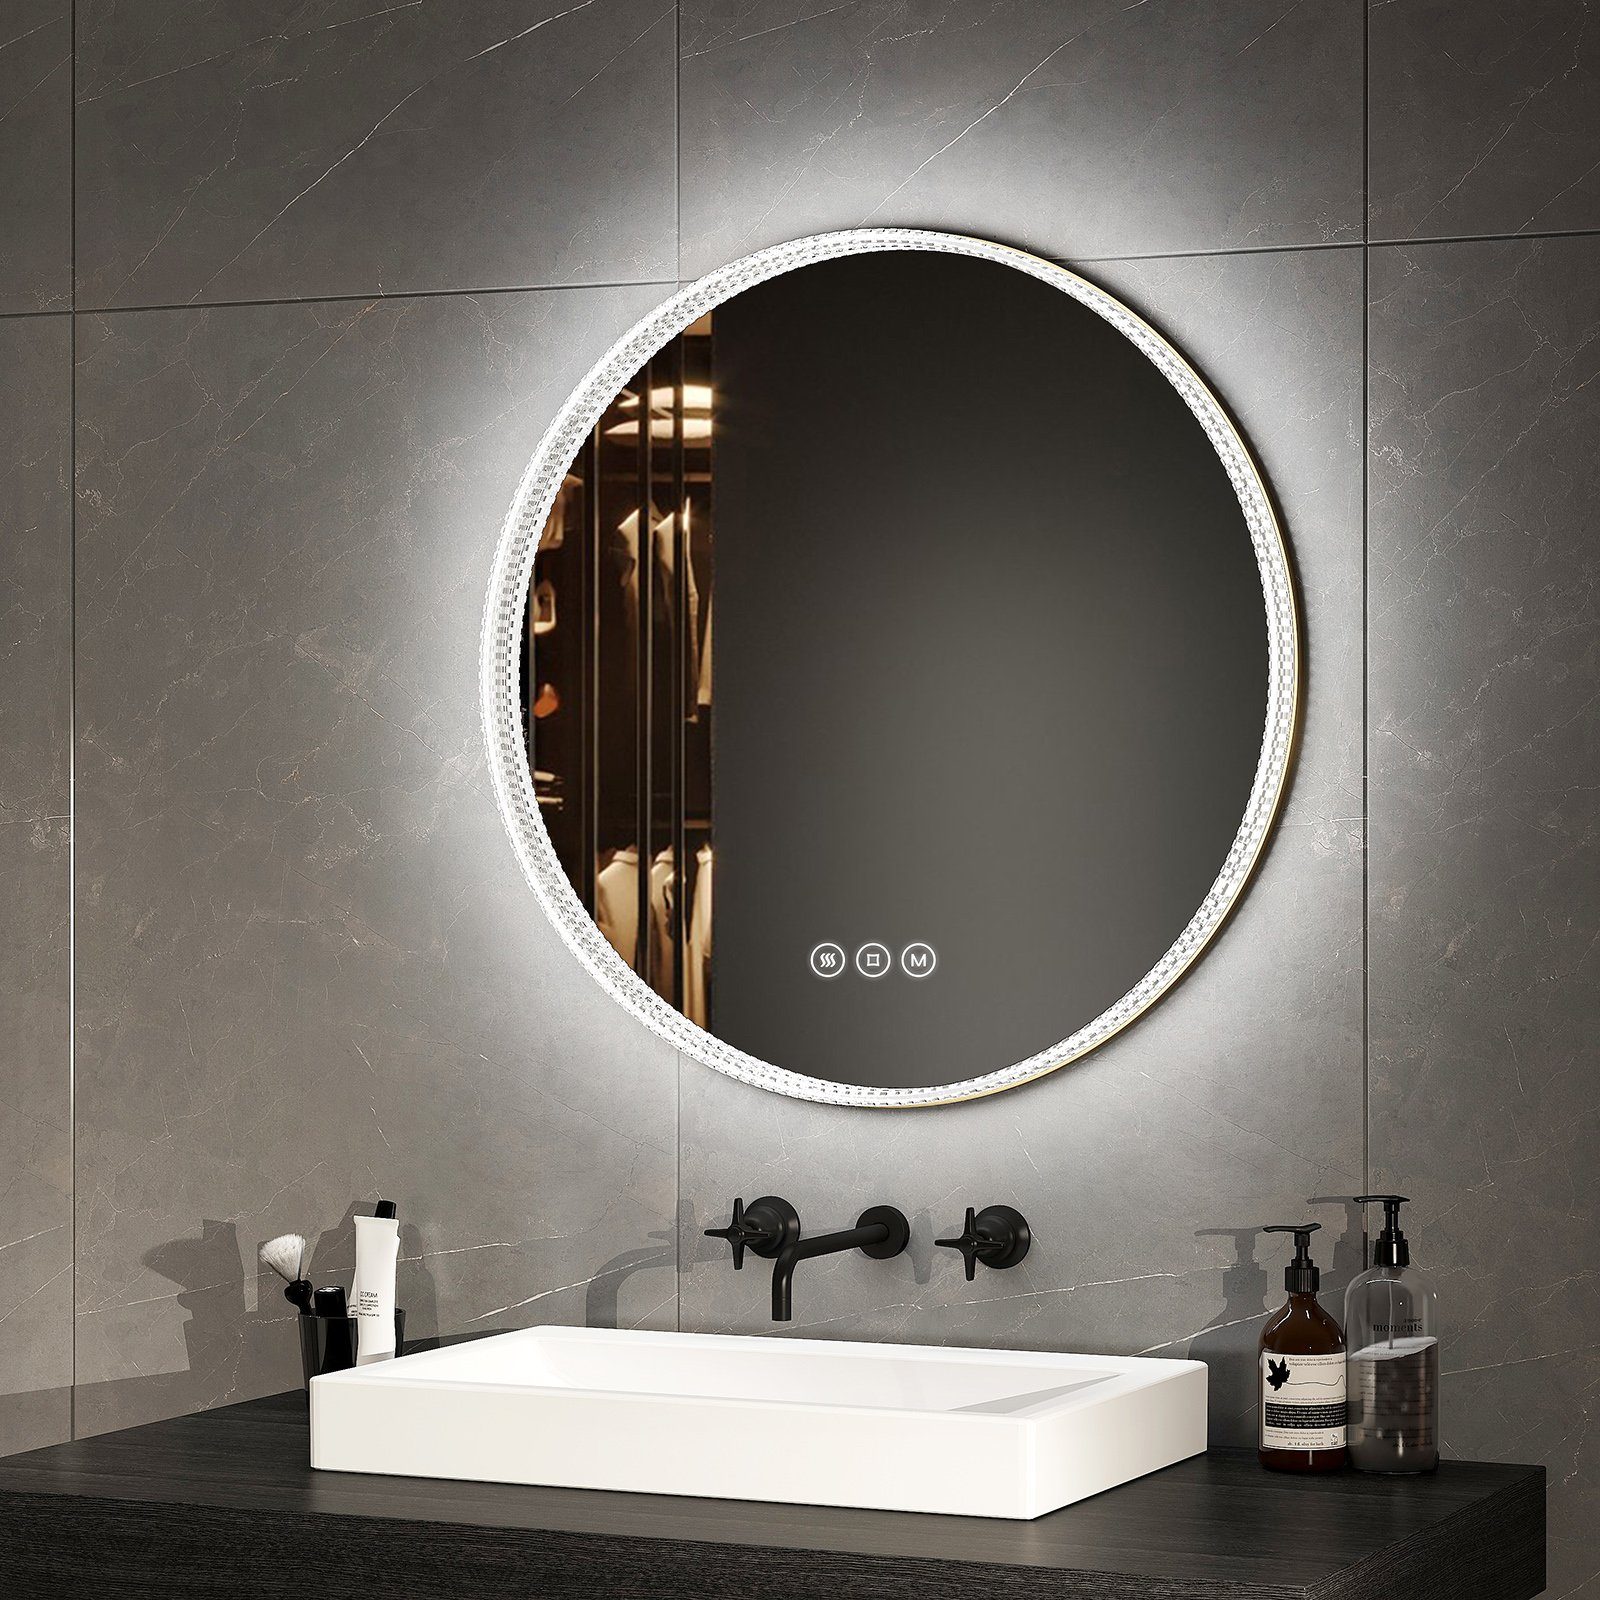 EMKE Badspiegel 60 cm LED Badezimmerspiegel 3 Lichtfarben Acryl Rahmen Spiegel, Wandspiegel mit Touch, Antibeschlage,Dimmbar, Memory-Funktion Goldener Rand